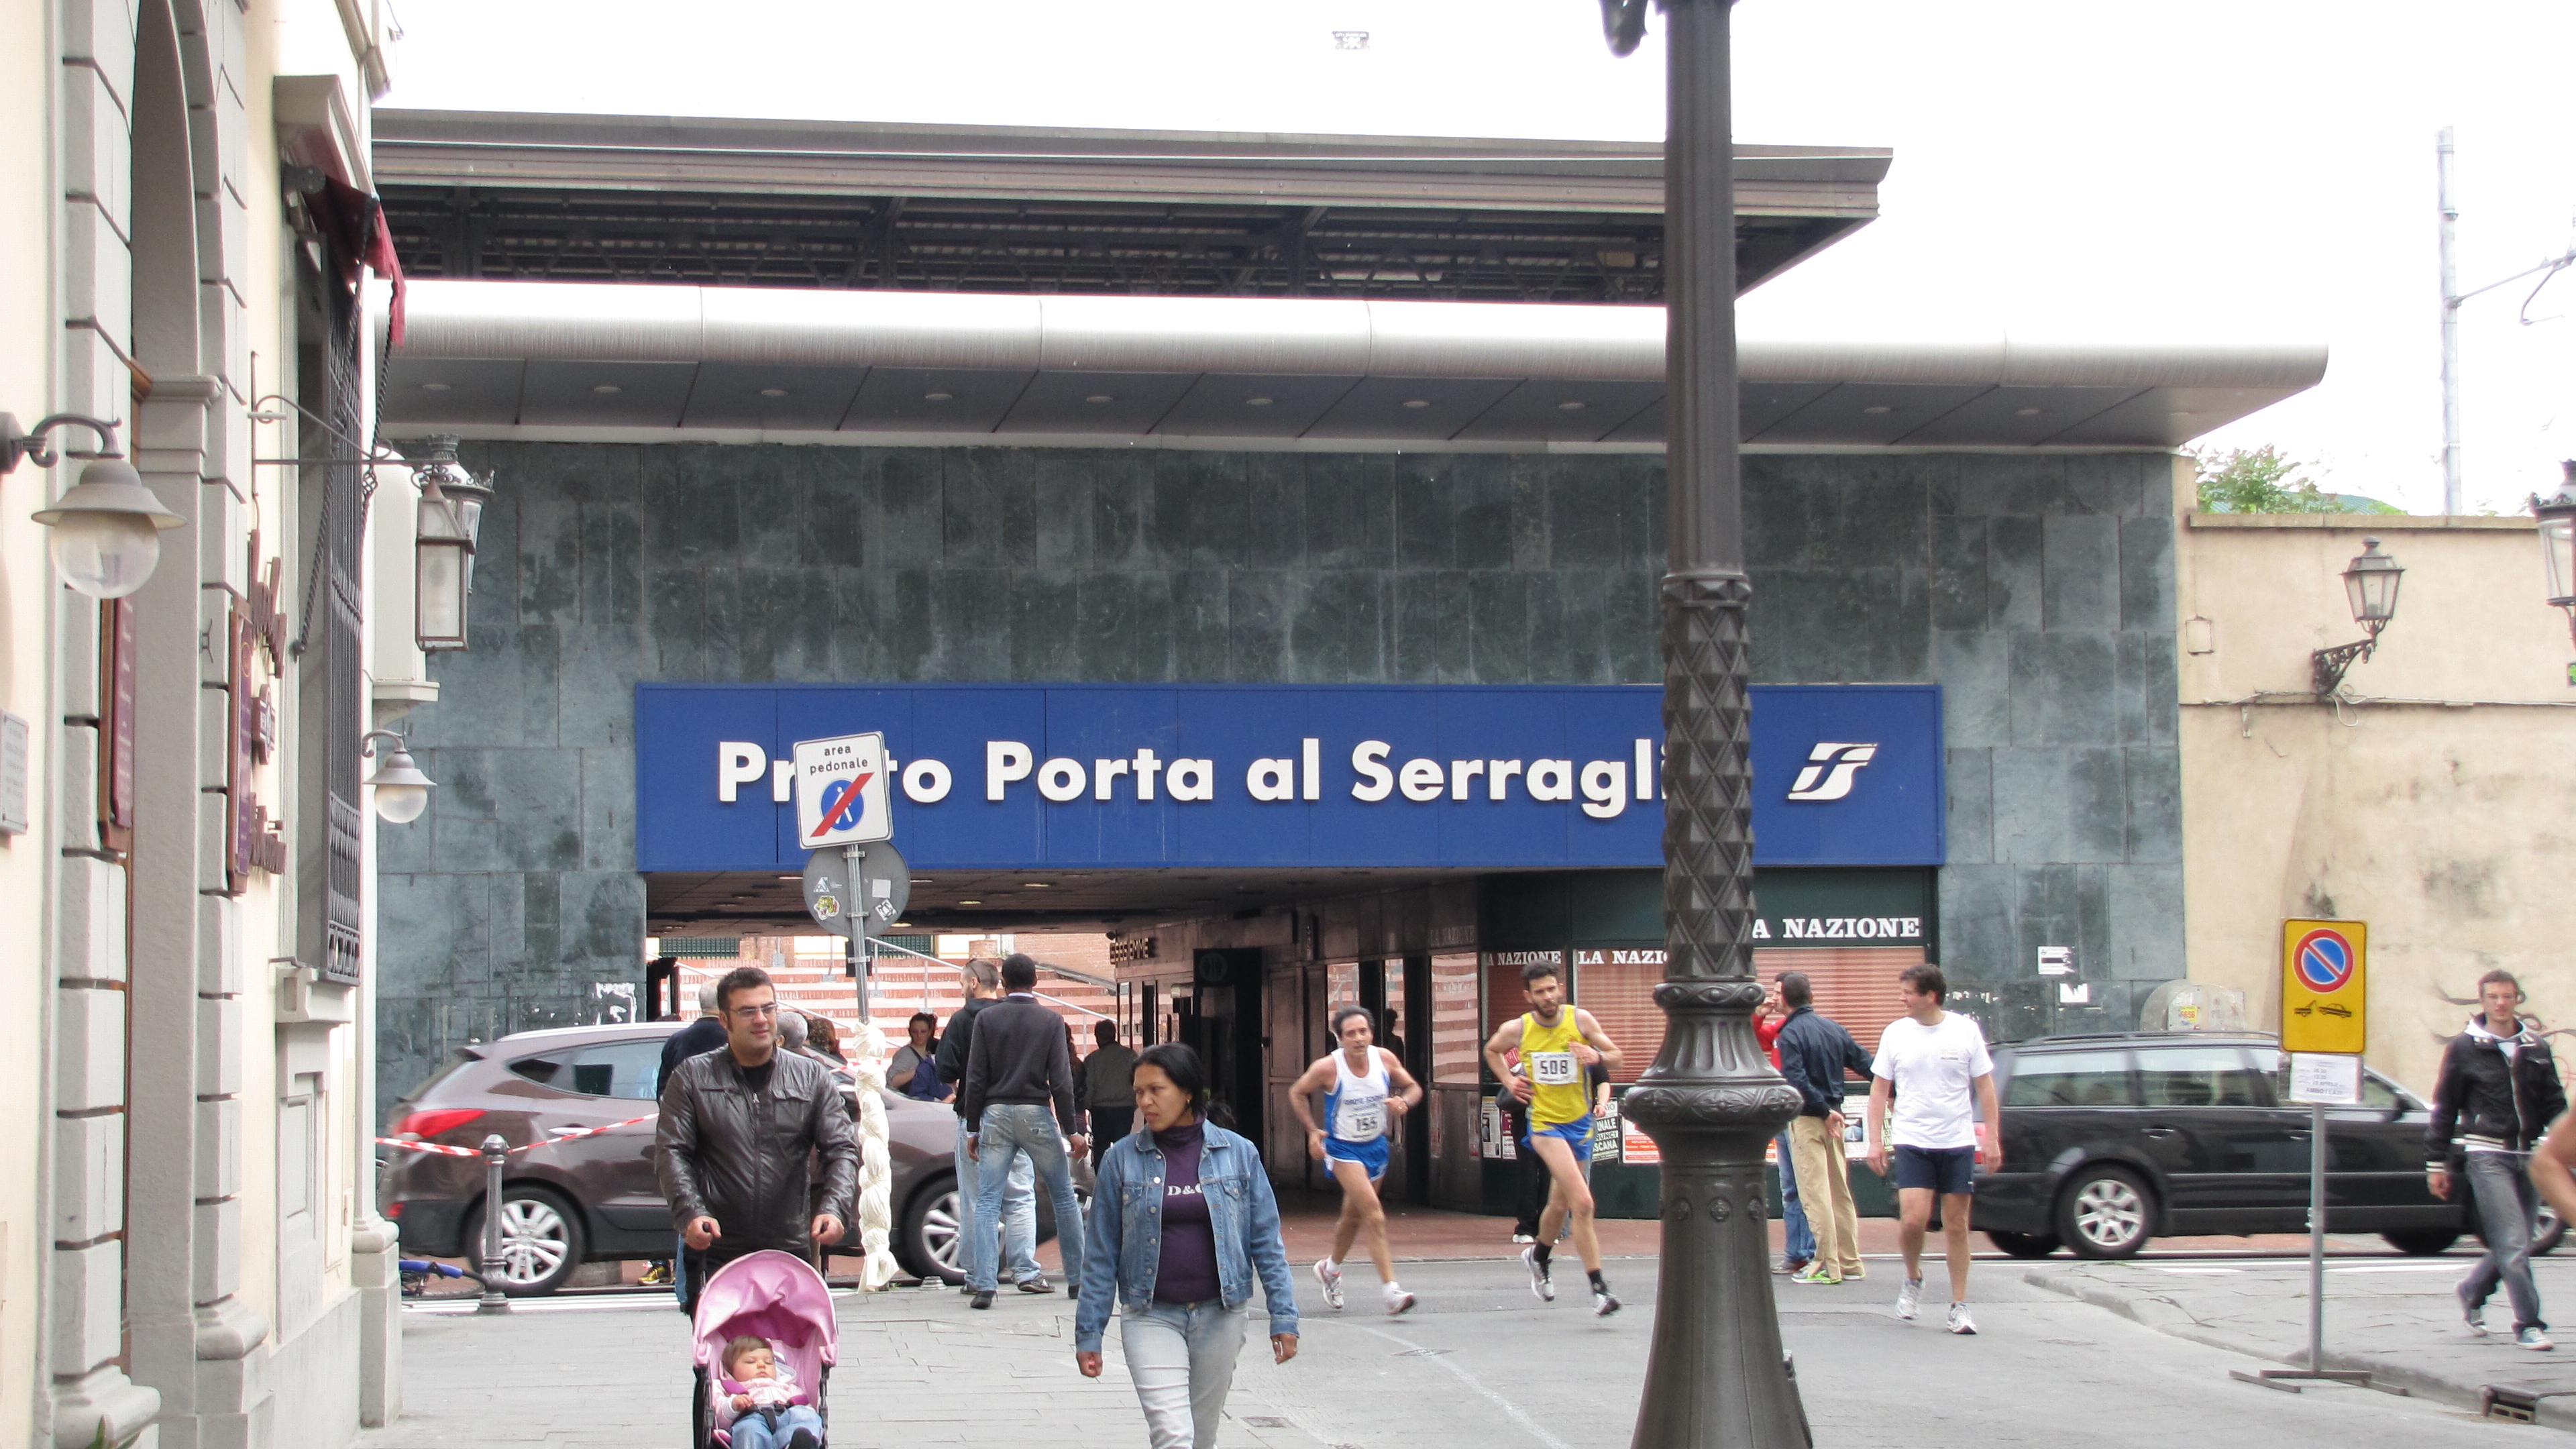 Prato Half Marthon and Stazione SPorta al Serraglio